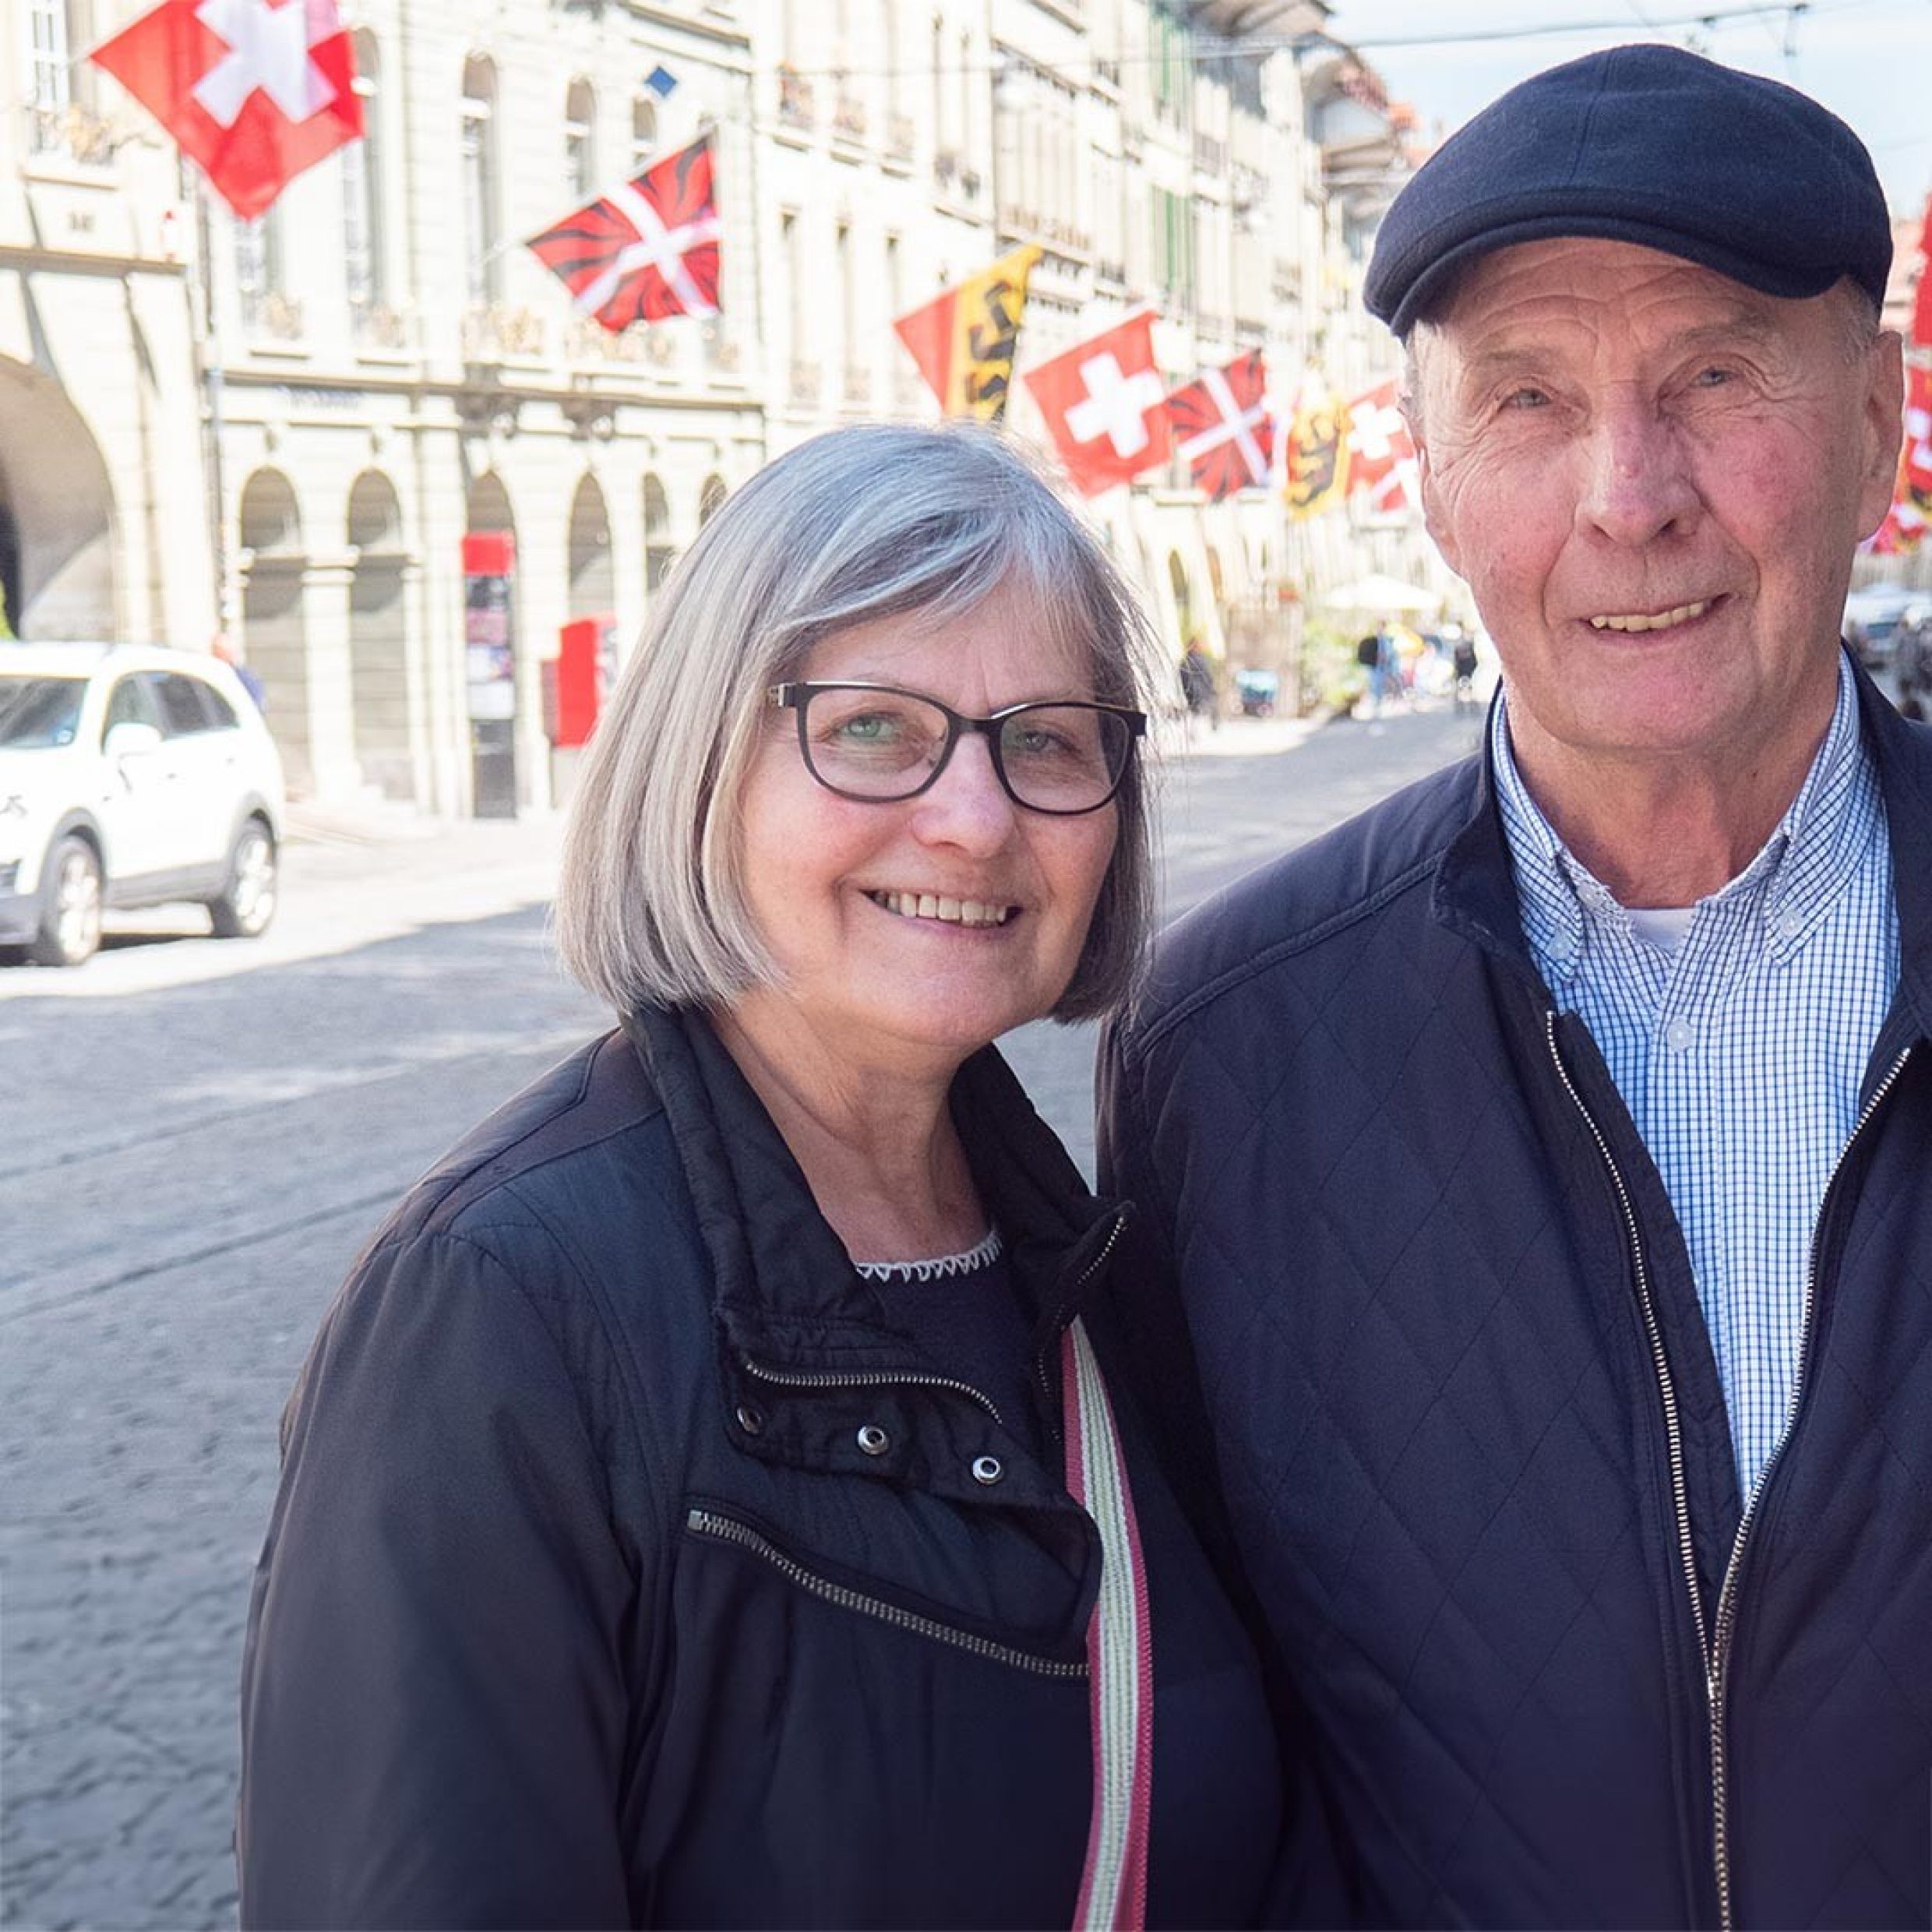 Älteres Ehepaar lächelt in Kamera in Berner Innenstadt